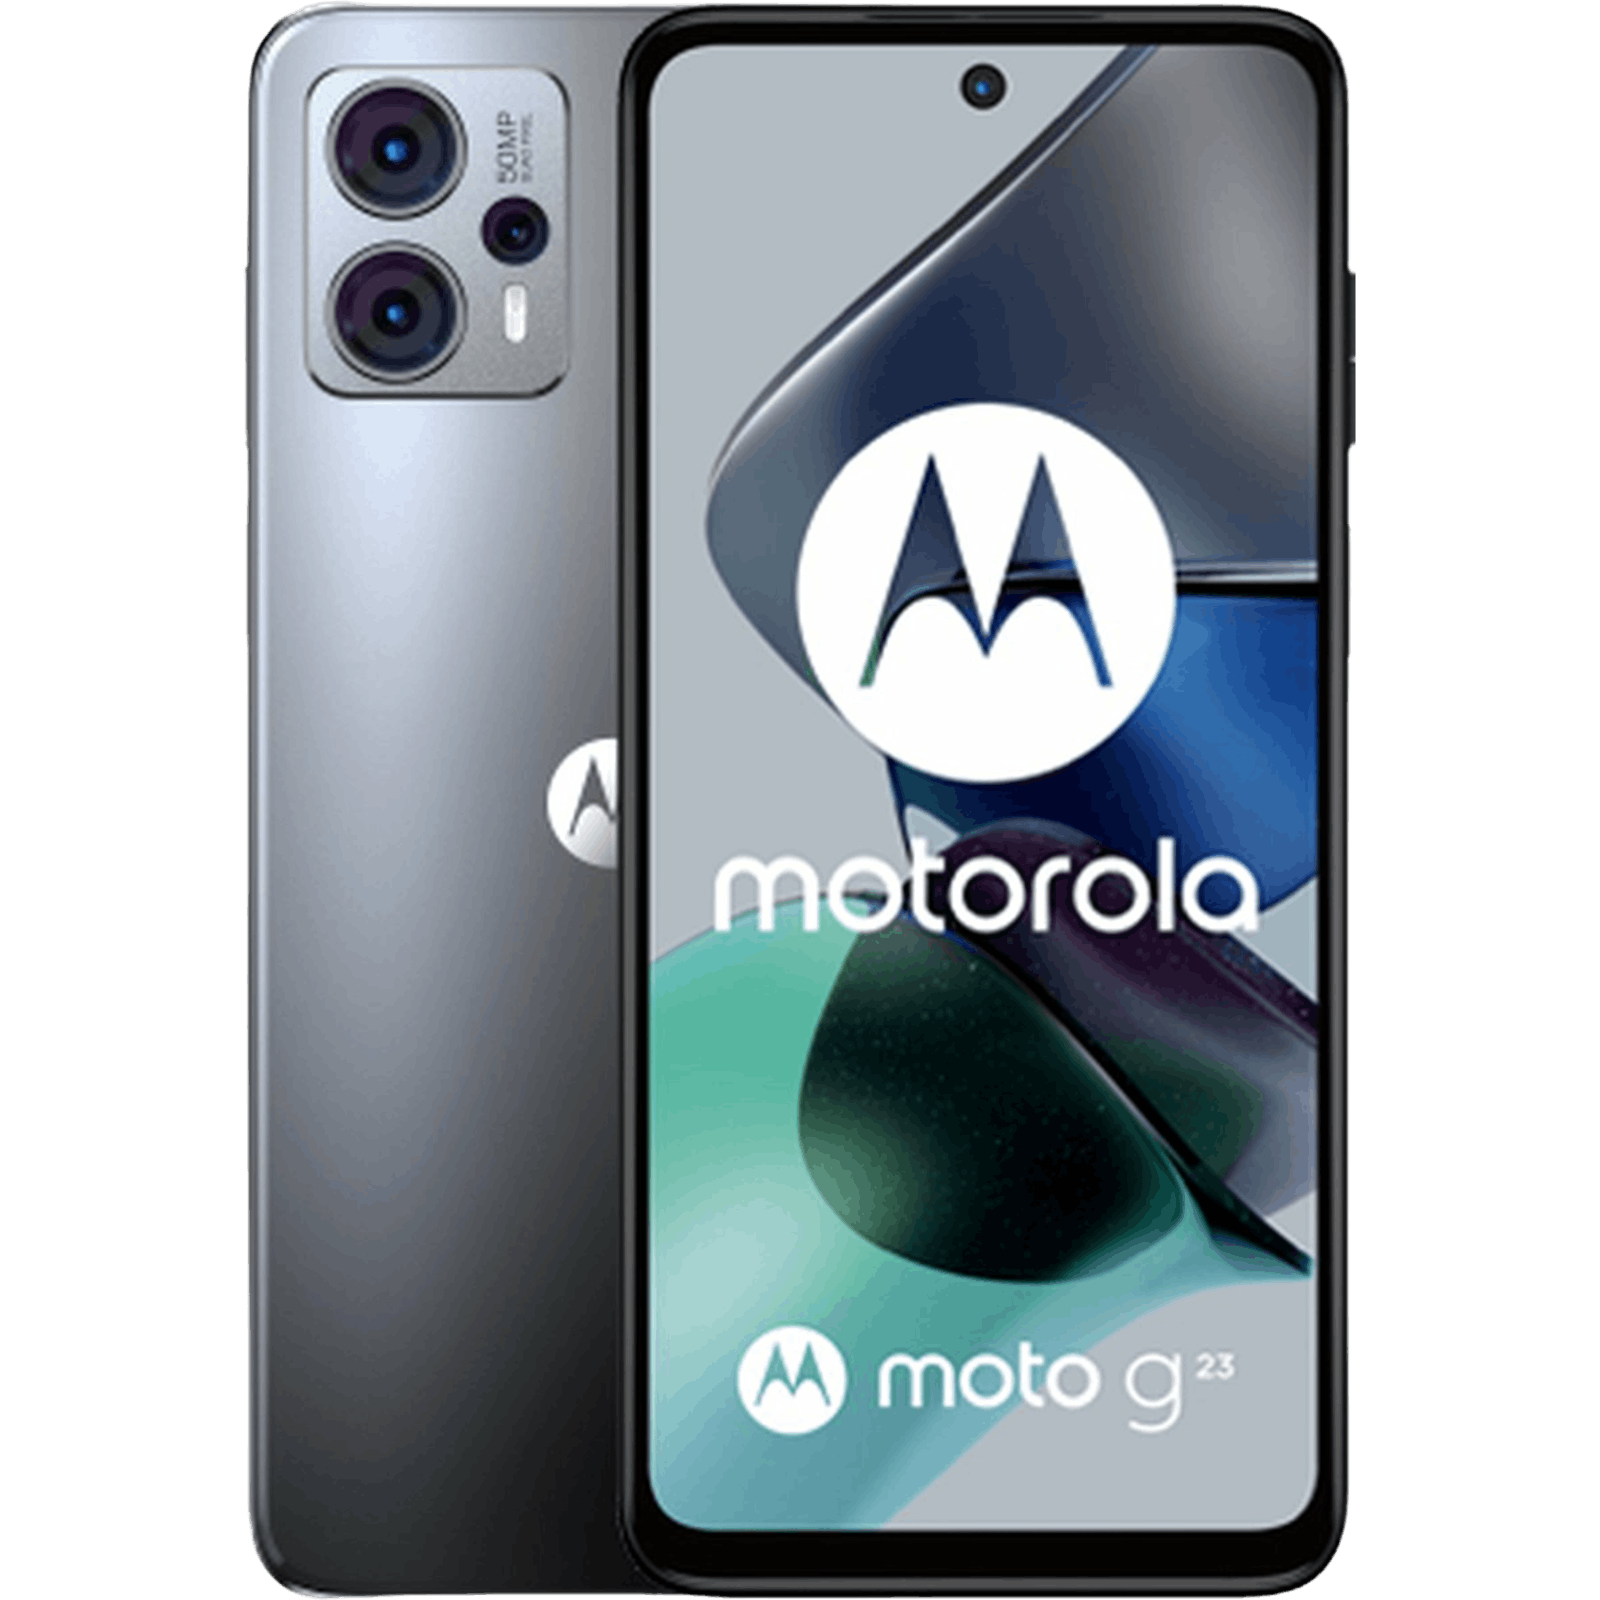 Monografie Vervormen kruis Motorola Moto G23 kopen | Los of met abonnement - Mobiel.nl